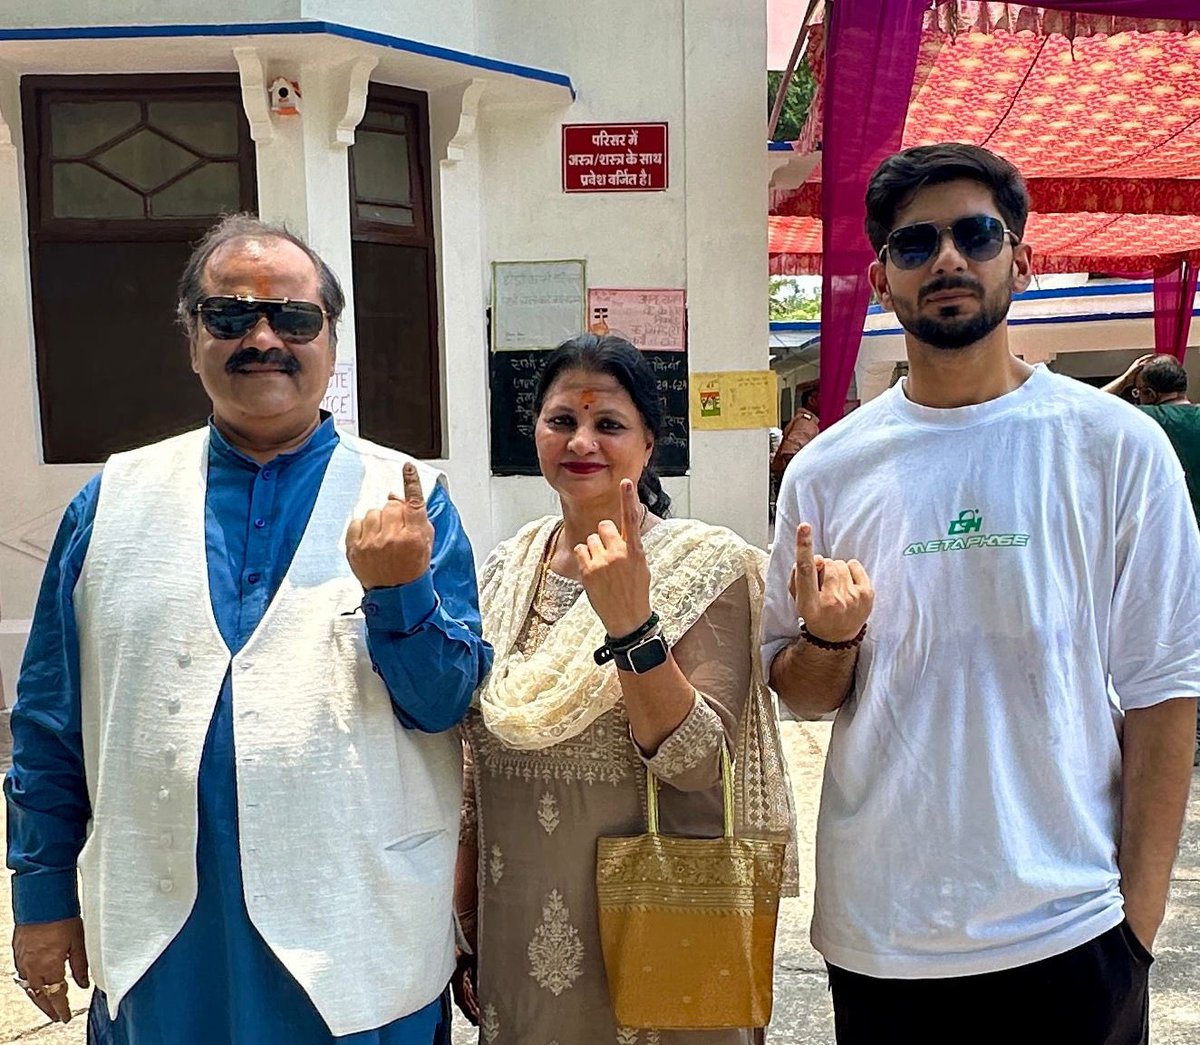 #लखनऊ 

भाजपा प्रवक्ता आलोक अवस्थी ने परिवार सहित वोट दिया. कहा, “मेरा वोट आत्मनिर्भर ,सुरक्षित ,समृद्ध, सशक्त और विकसित भारत के लिए। क्या आपने मतदान किया.”
@aalok_aawasthii